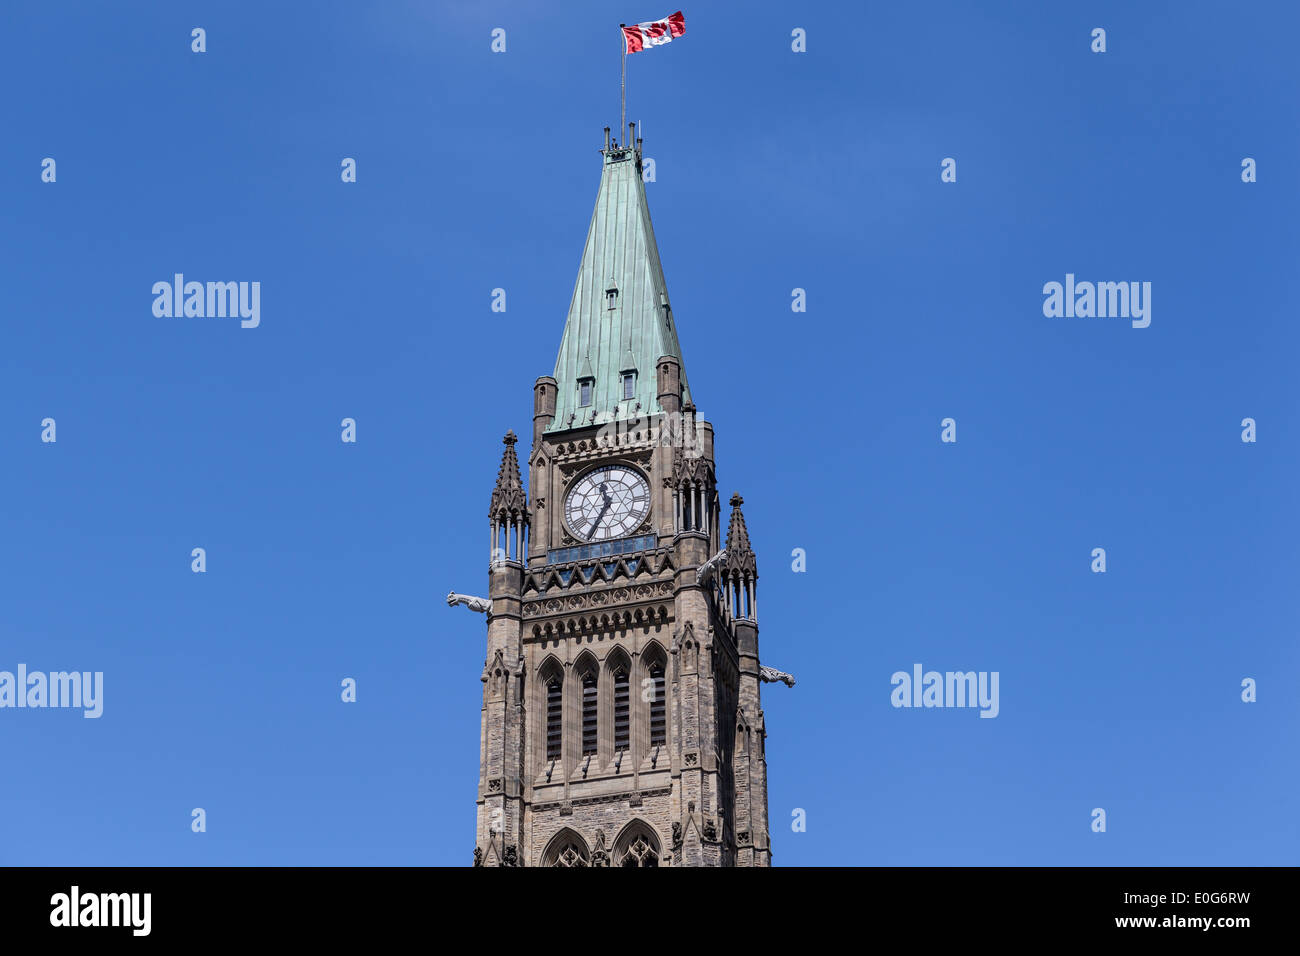 L'horloge de la tour de la paix avec le drapeau du Canada, Ottawa Banque D'Images